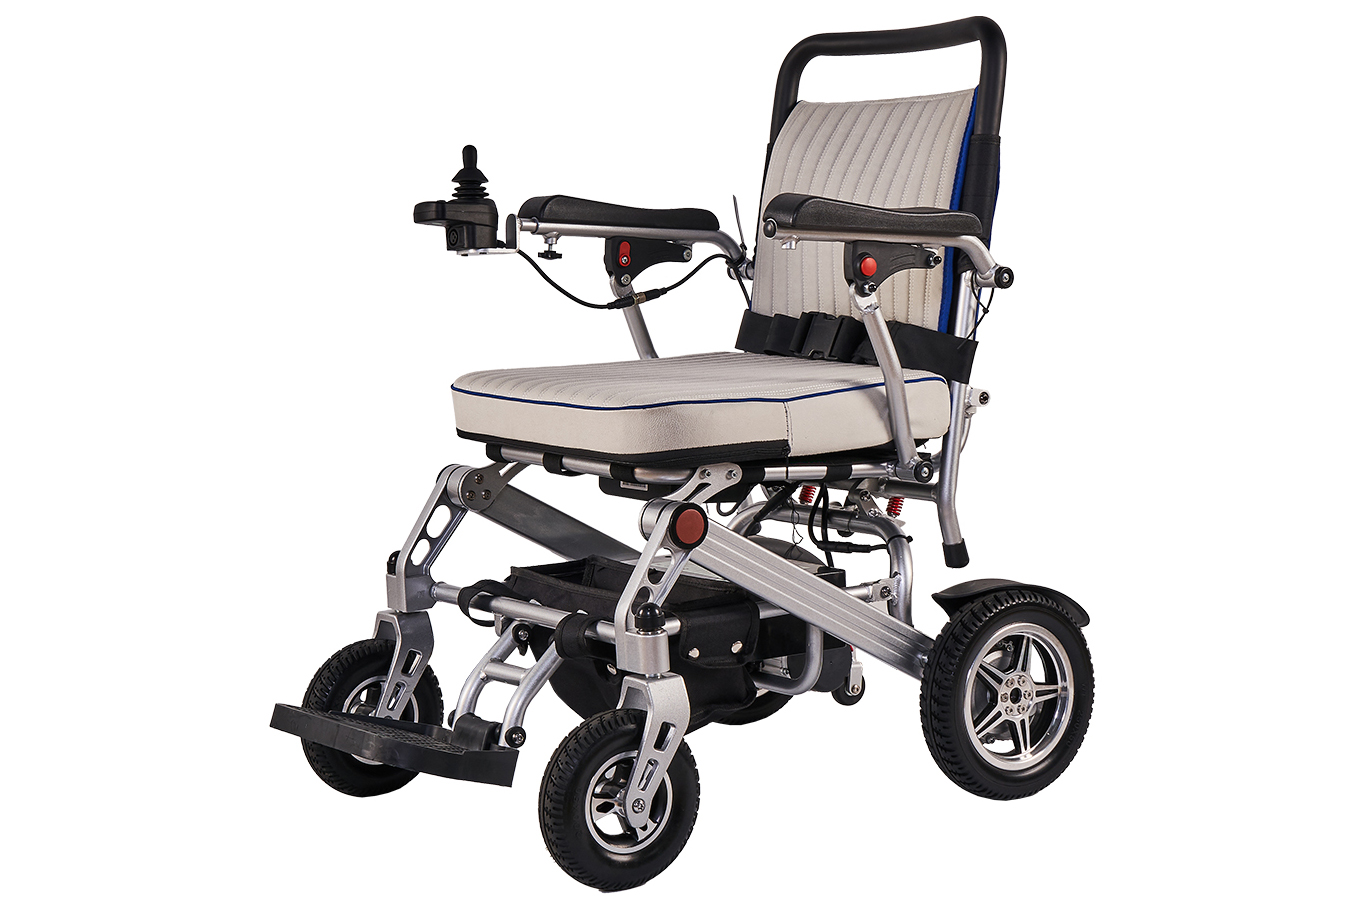 Už jste někdy viděli takový elektrický invalidní vozík? – Odhalování budoucnosti se skládacím lehkým elektrickým invalidním vozíkem